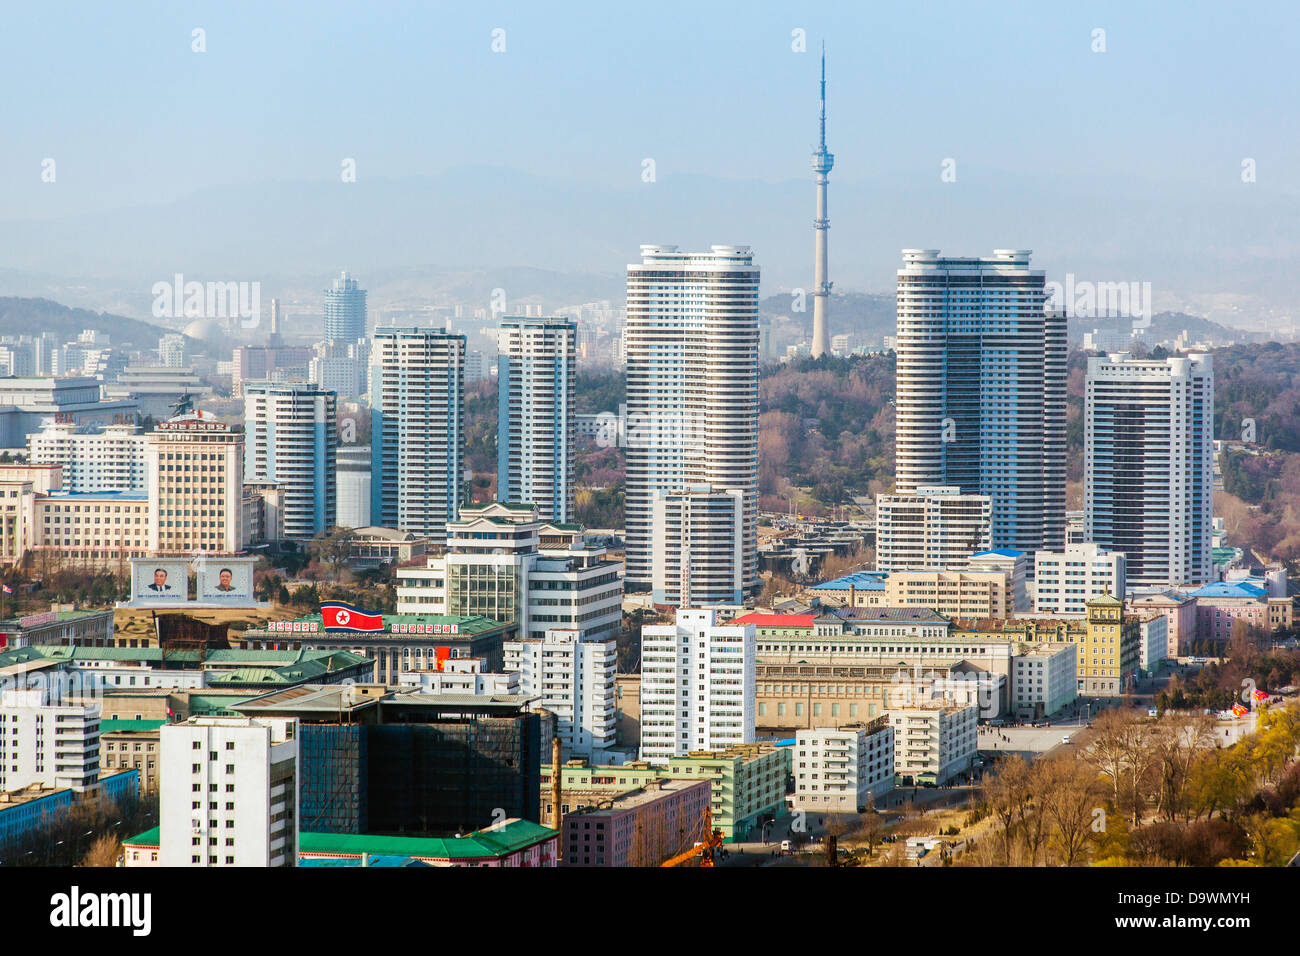 La République populaire démocratique de Corée (RPDC), la Corée du Nord, Pyongyang city skyline Banque D'Images